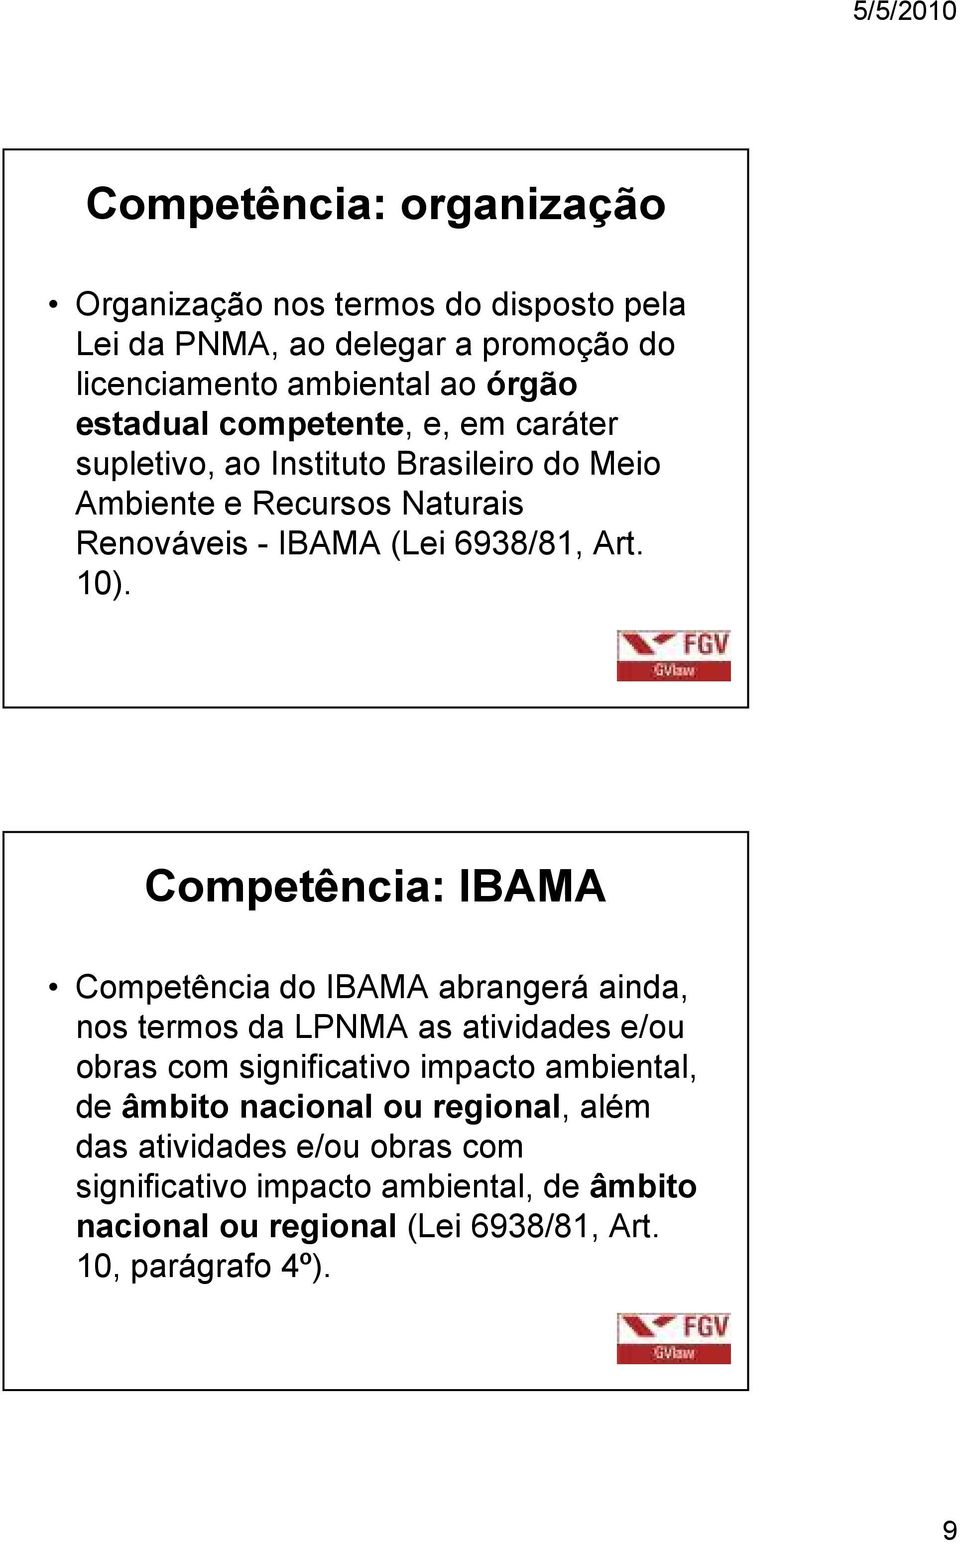 Competência: IBAMA Competência do IBAMA abrangerá ainda, nos termos da LPNMA as atividades e/ou obras com significativo impacto ambiental, de âmbito